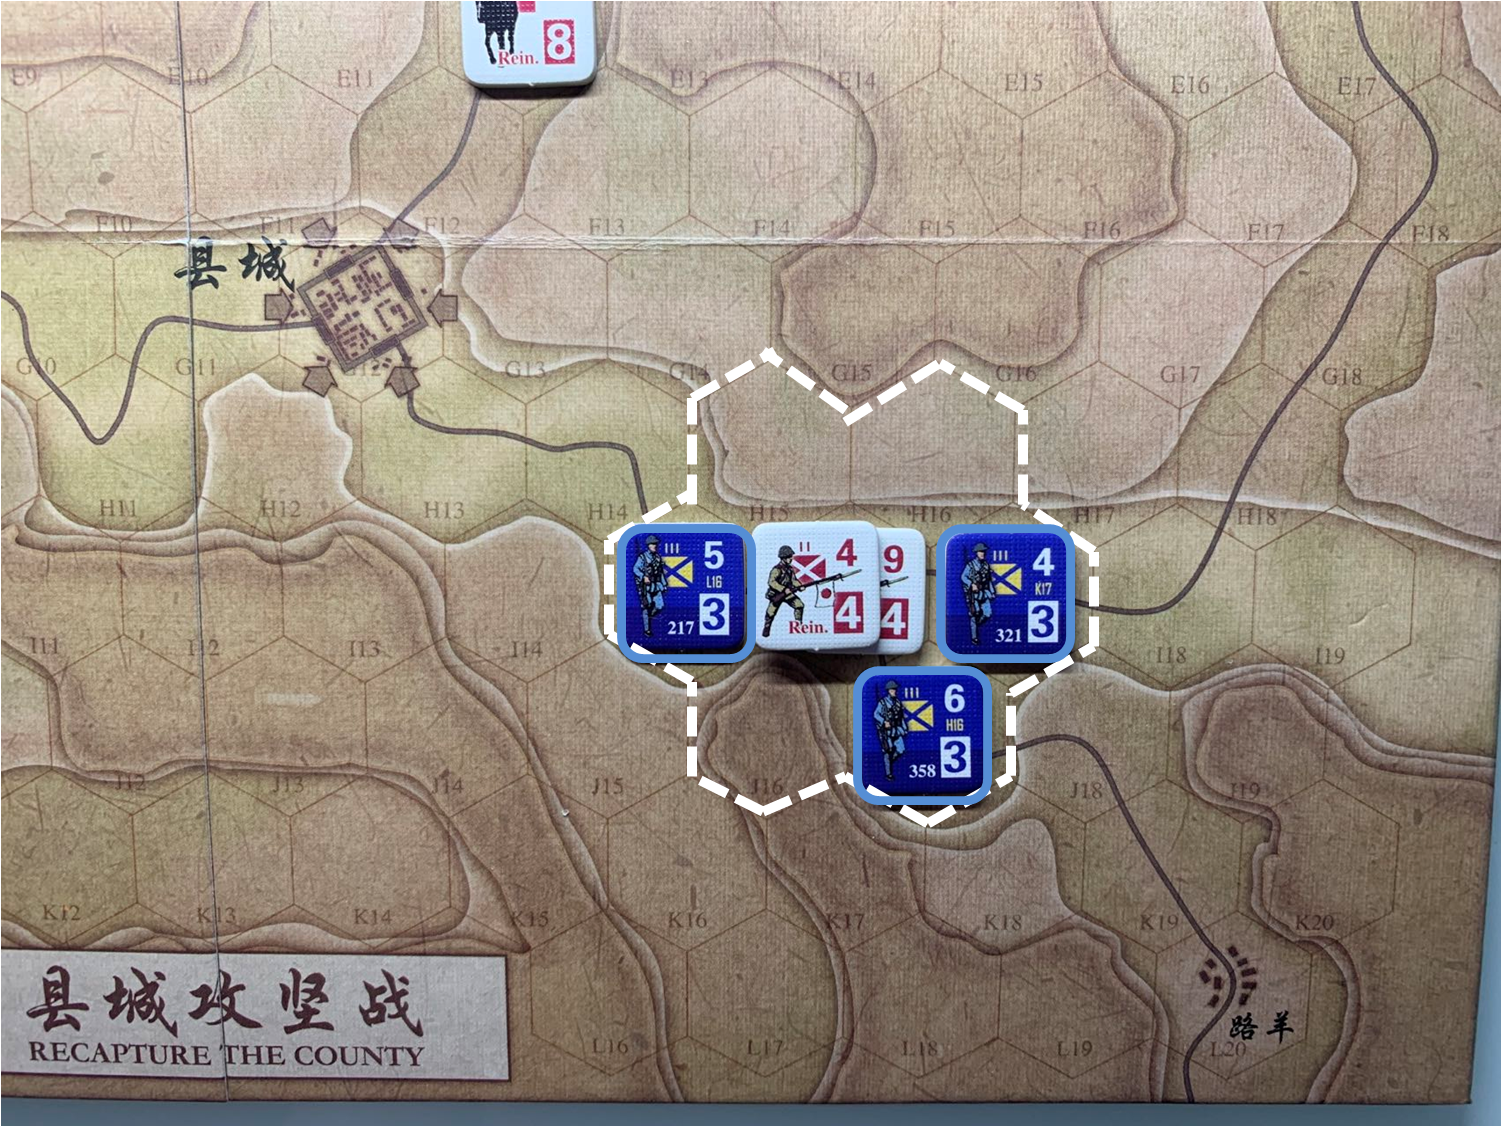 第四回合国军正规军部队对于移动命令1的执行结果，及对应方向日军增援部队控制区覆盖范围